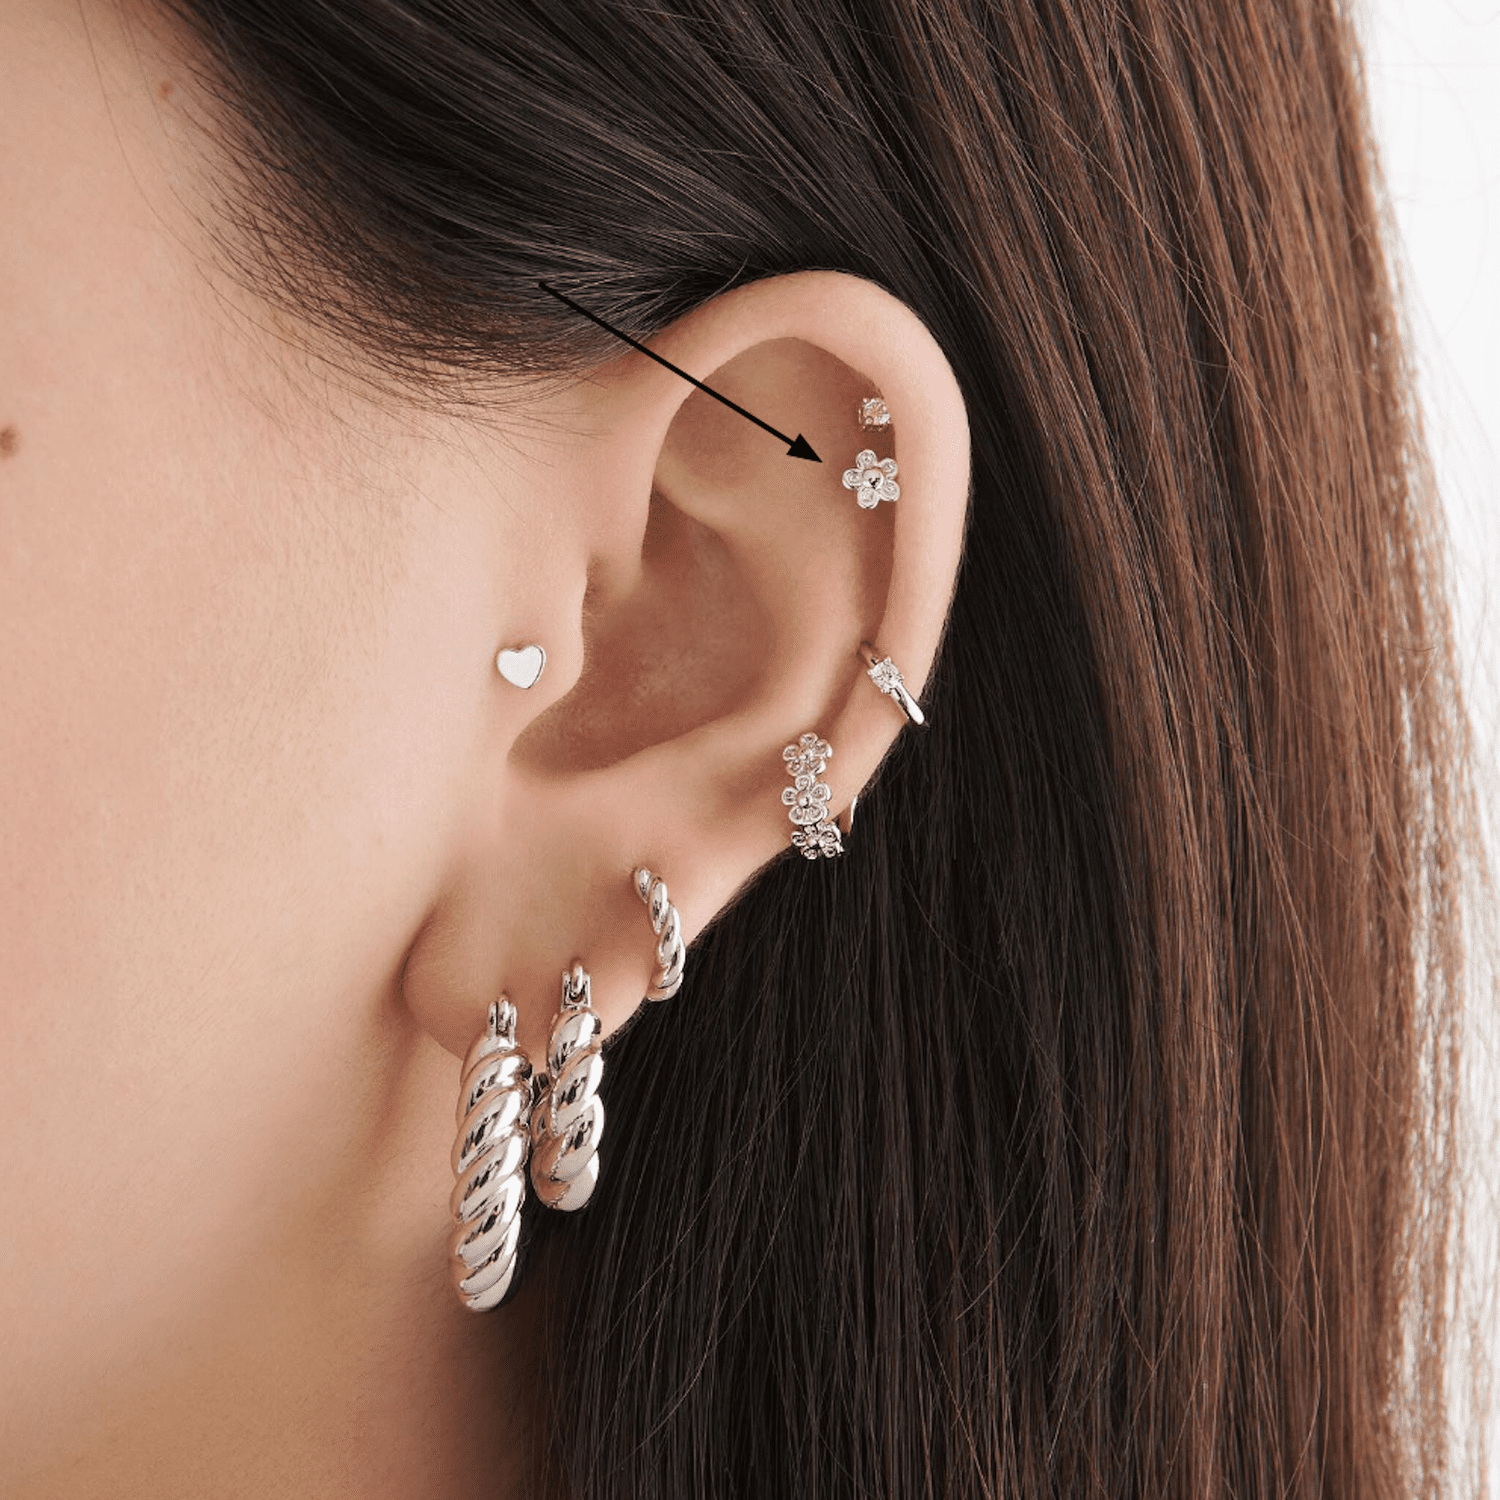 Vista lateral da orelha de uma mulher com muitos piercings